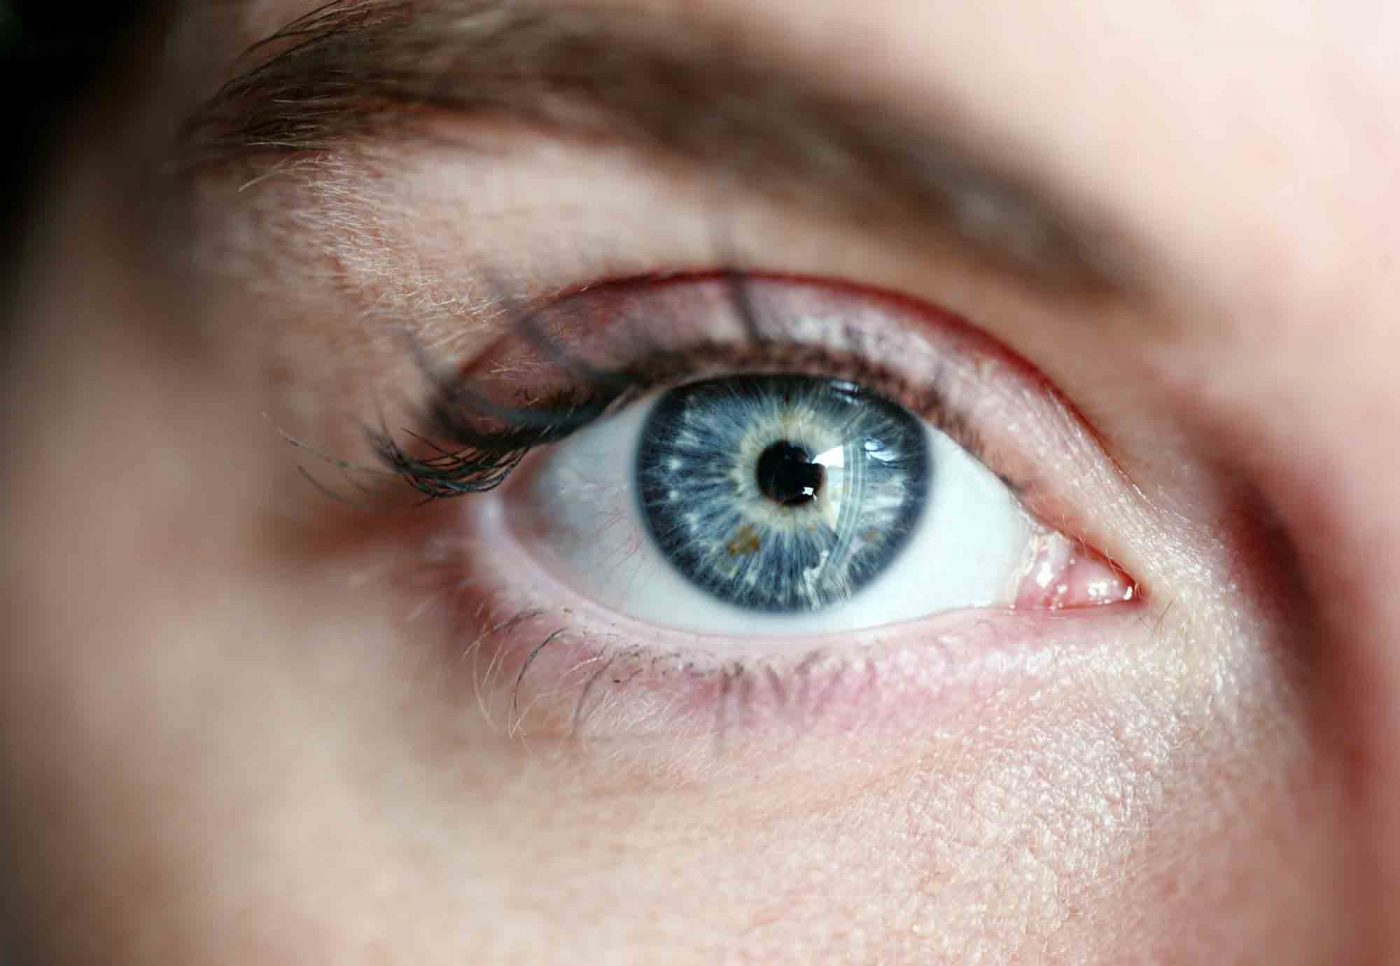 "Gründe für unsere Blindheit gibt es viele. Aber Blindheit und bewusstes Wegsehen schützt nicht." Foto: pixabay